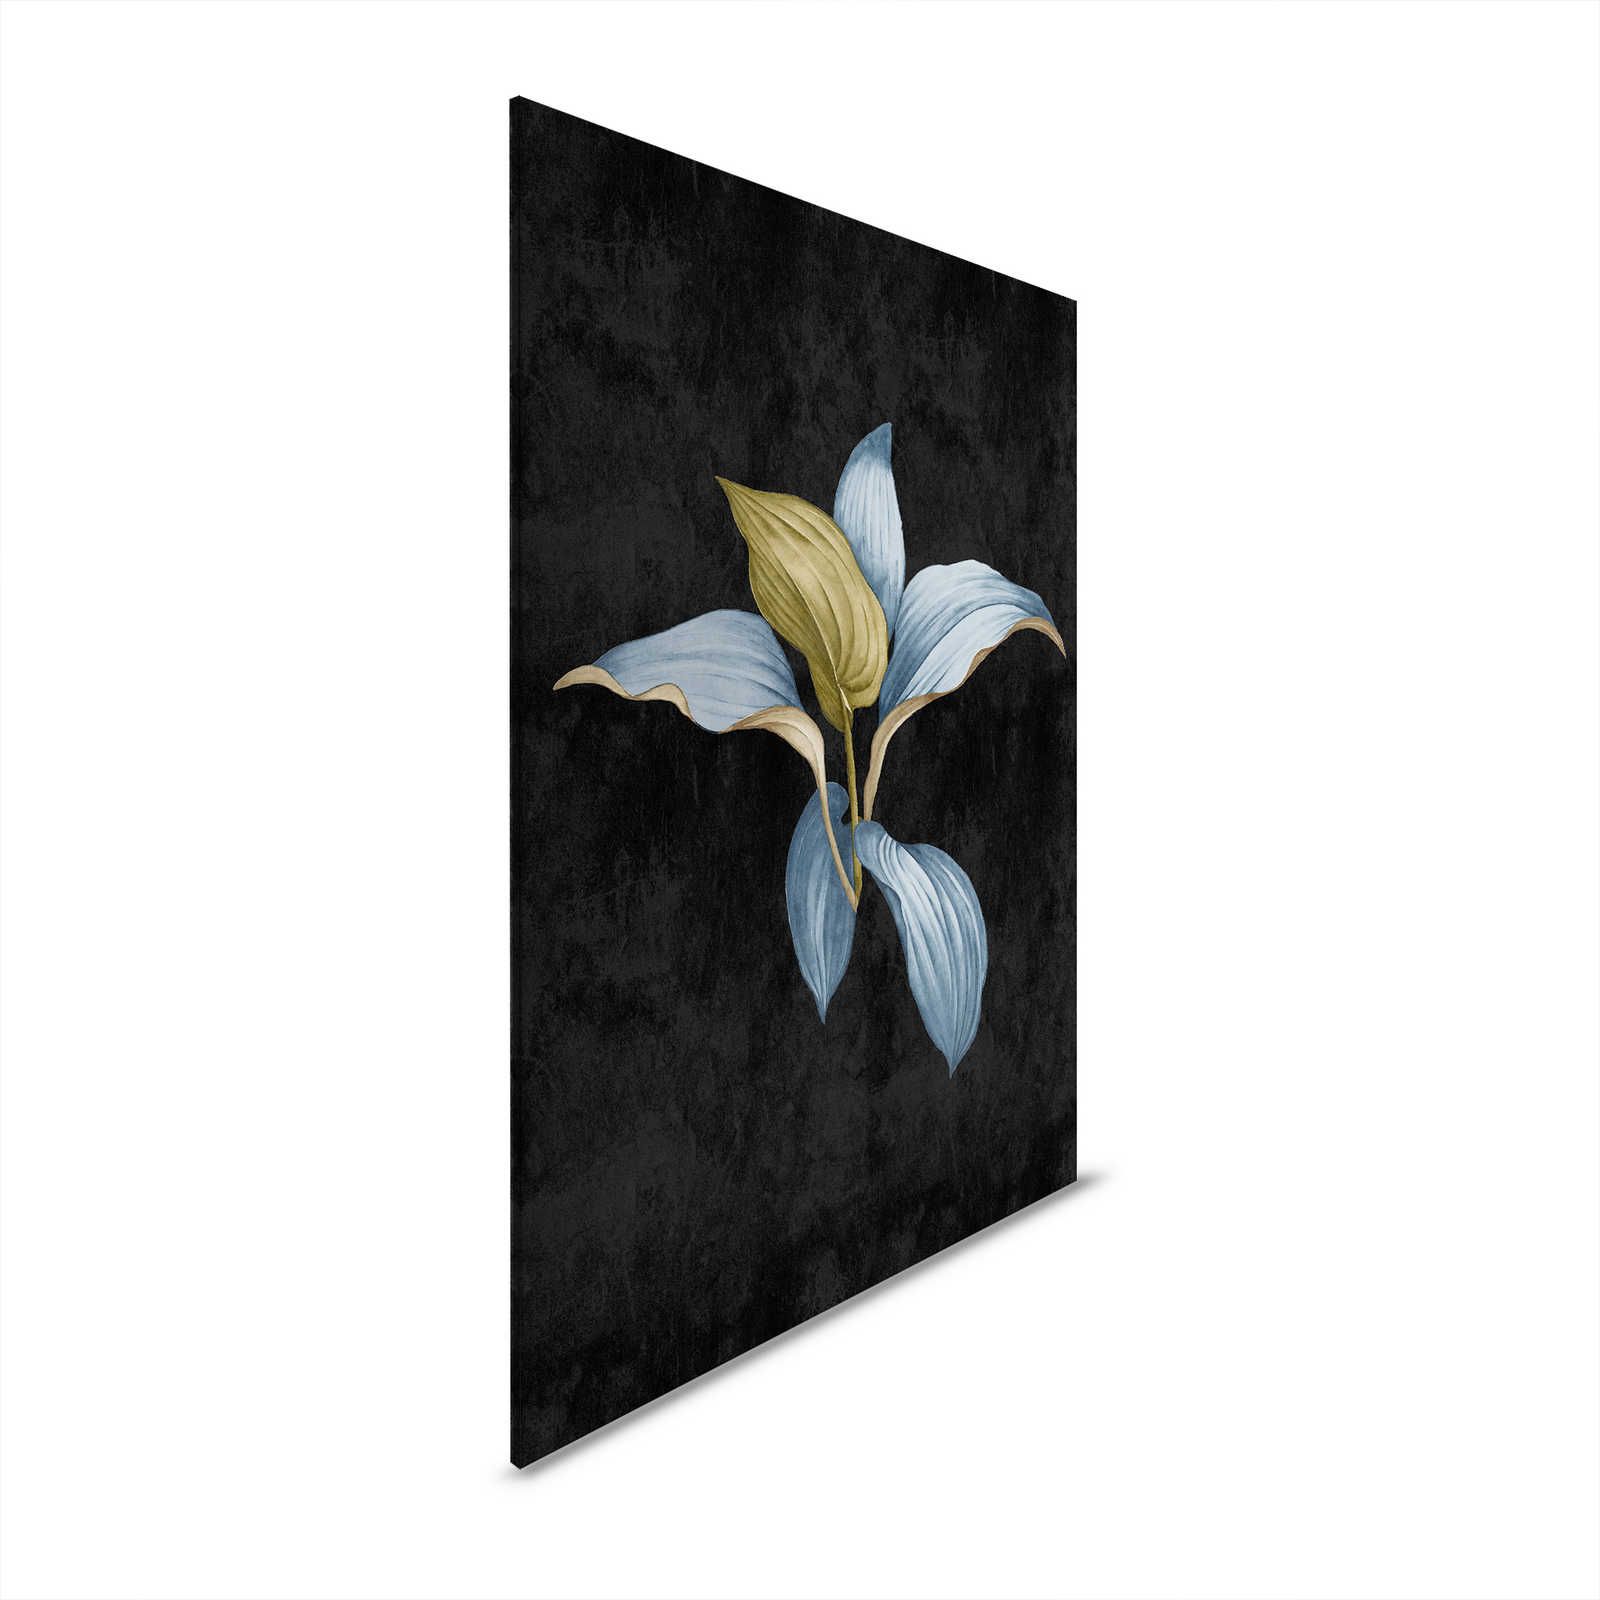 Fiji 3 - Quadro su tela scura con disegno botanico in blu e verde - 0,80 m x 1,20 m
